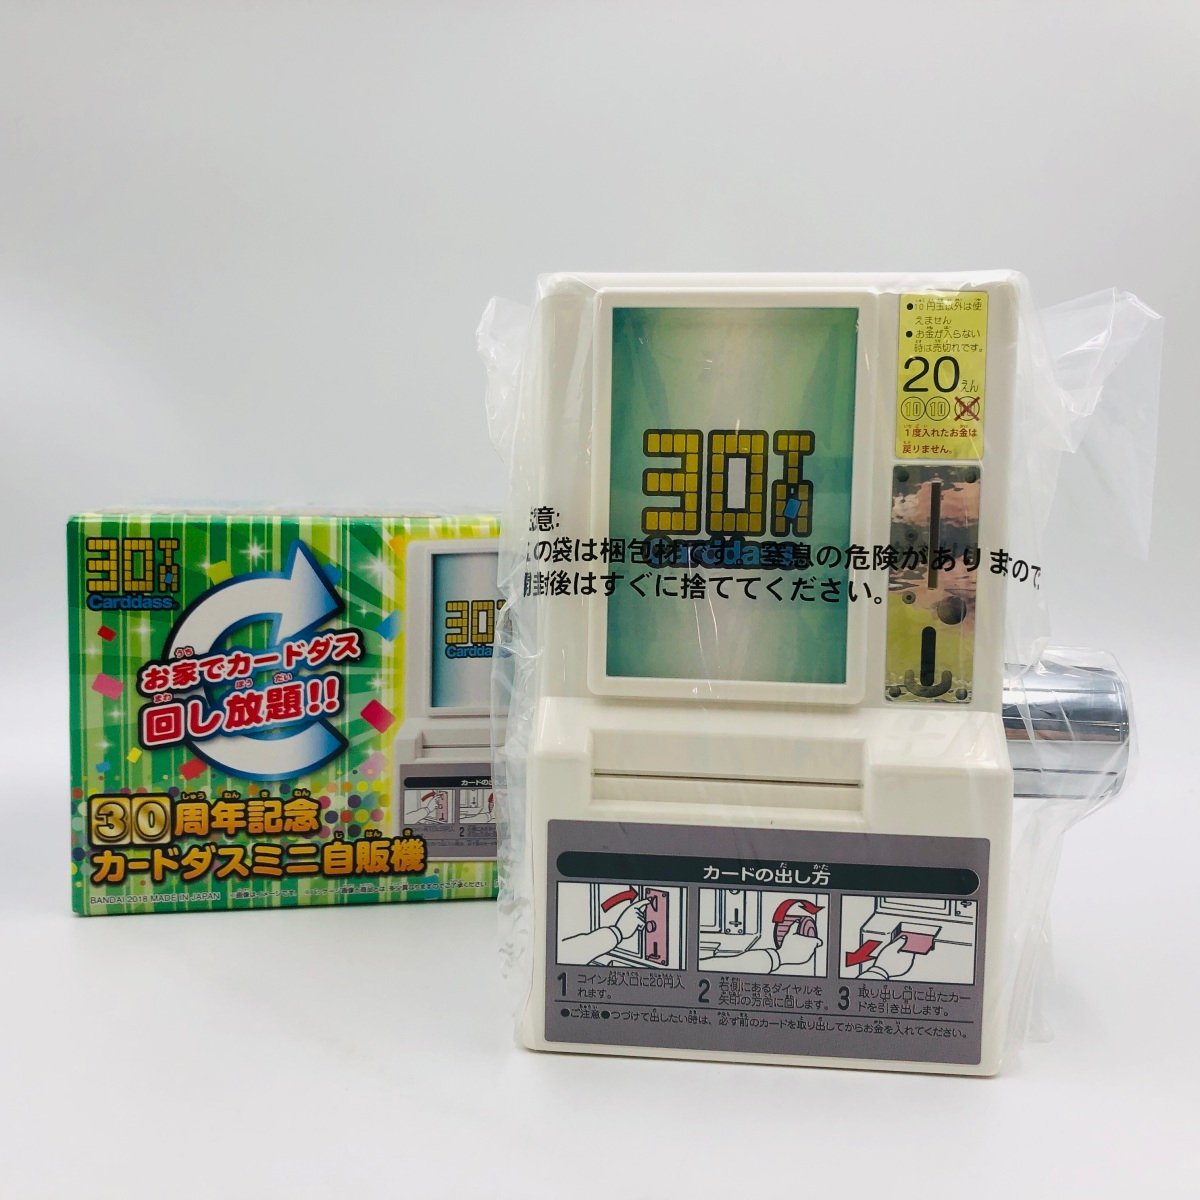 新古品 カードダス 30周年記念 ベストセレクション カードダスミニ自販機の画像1